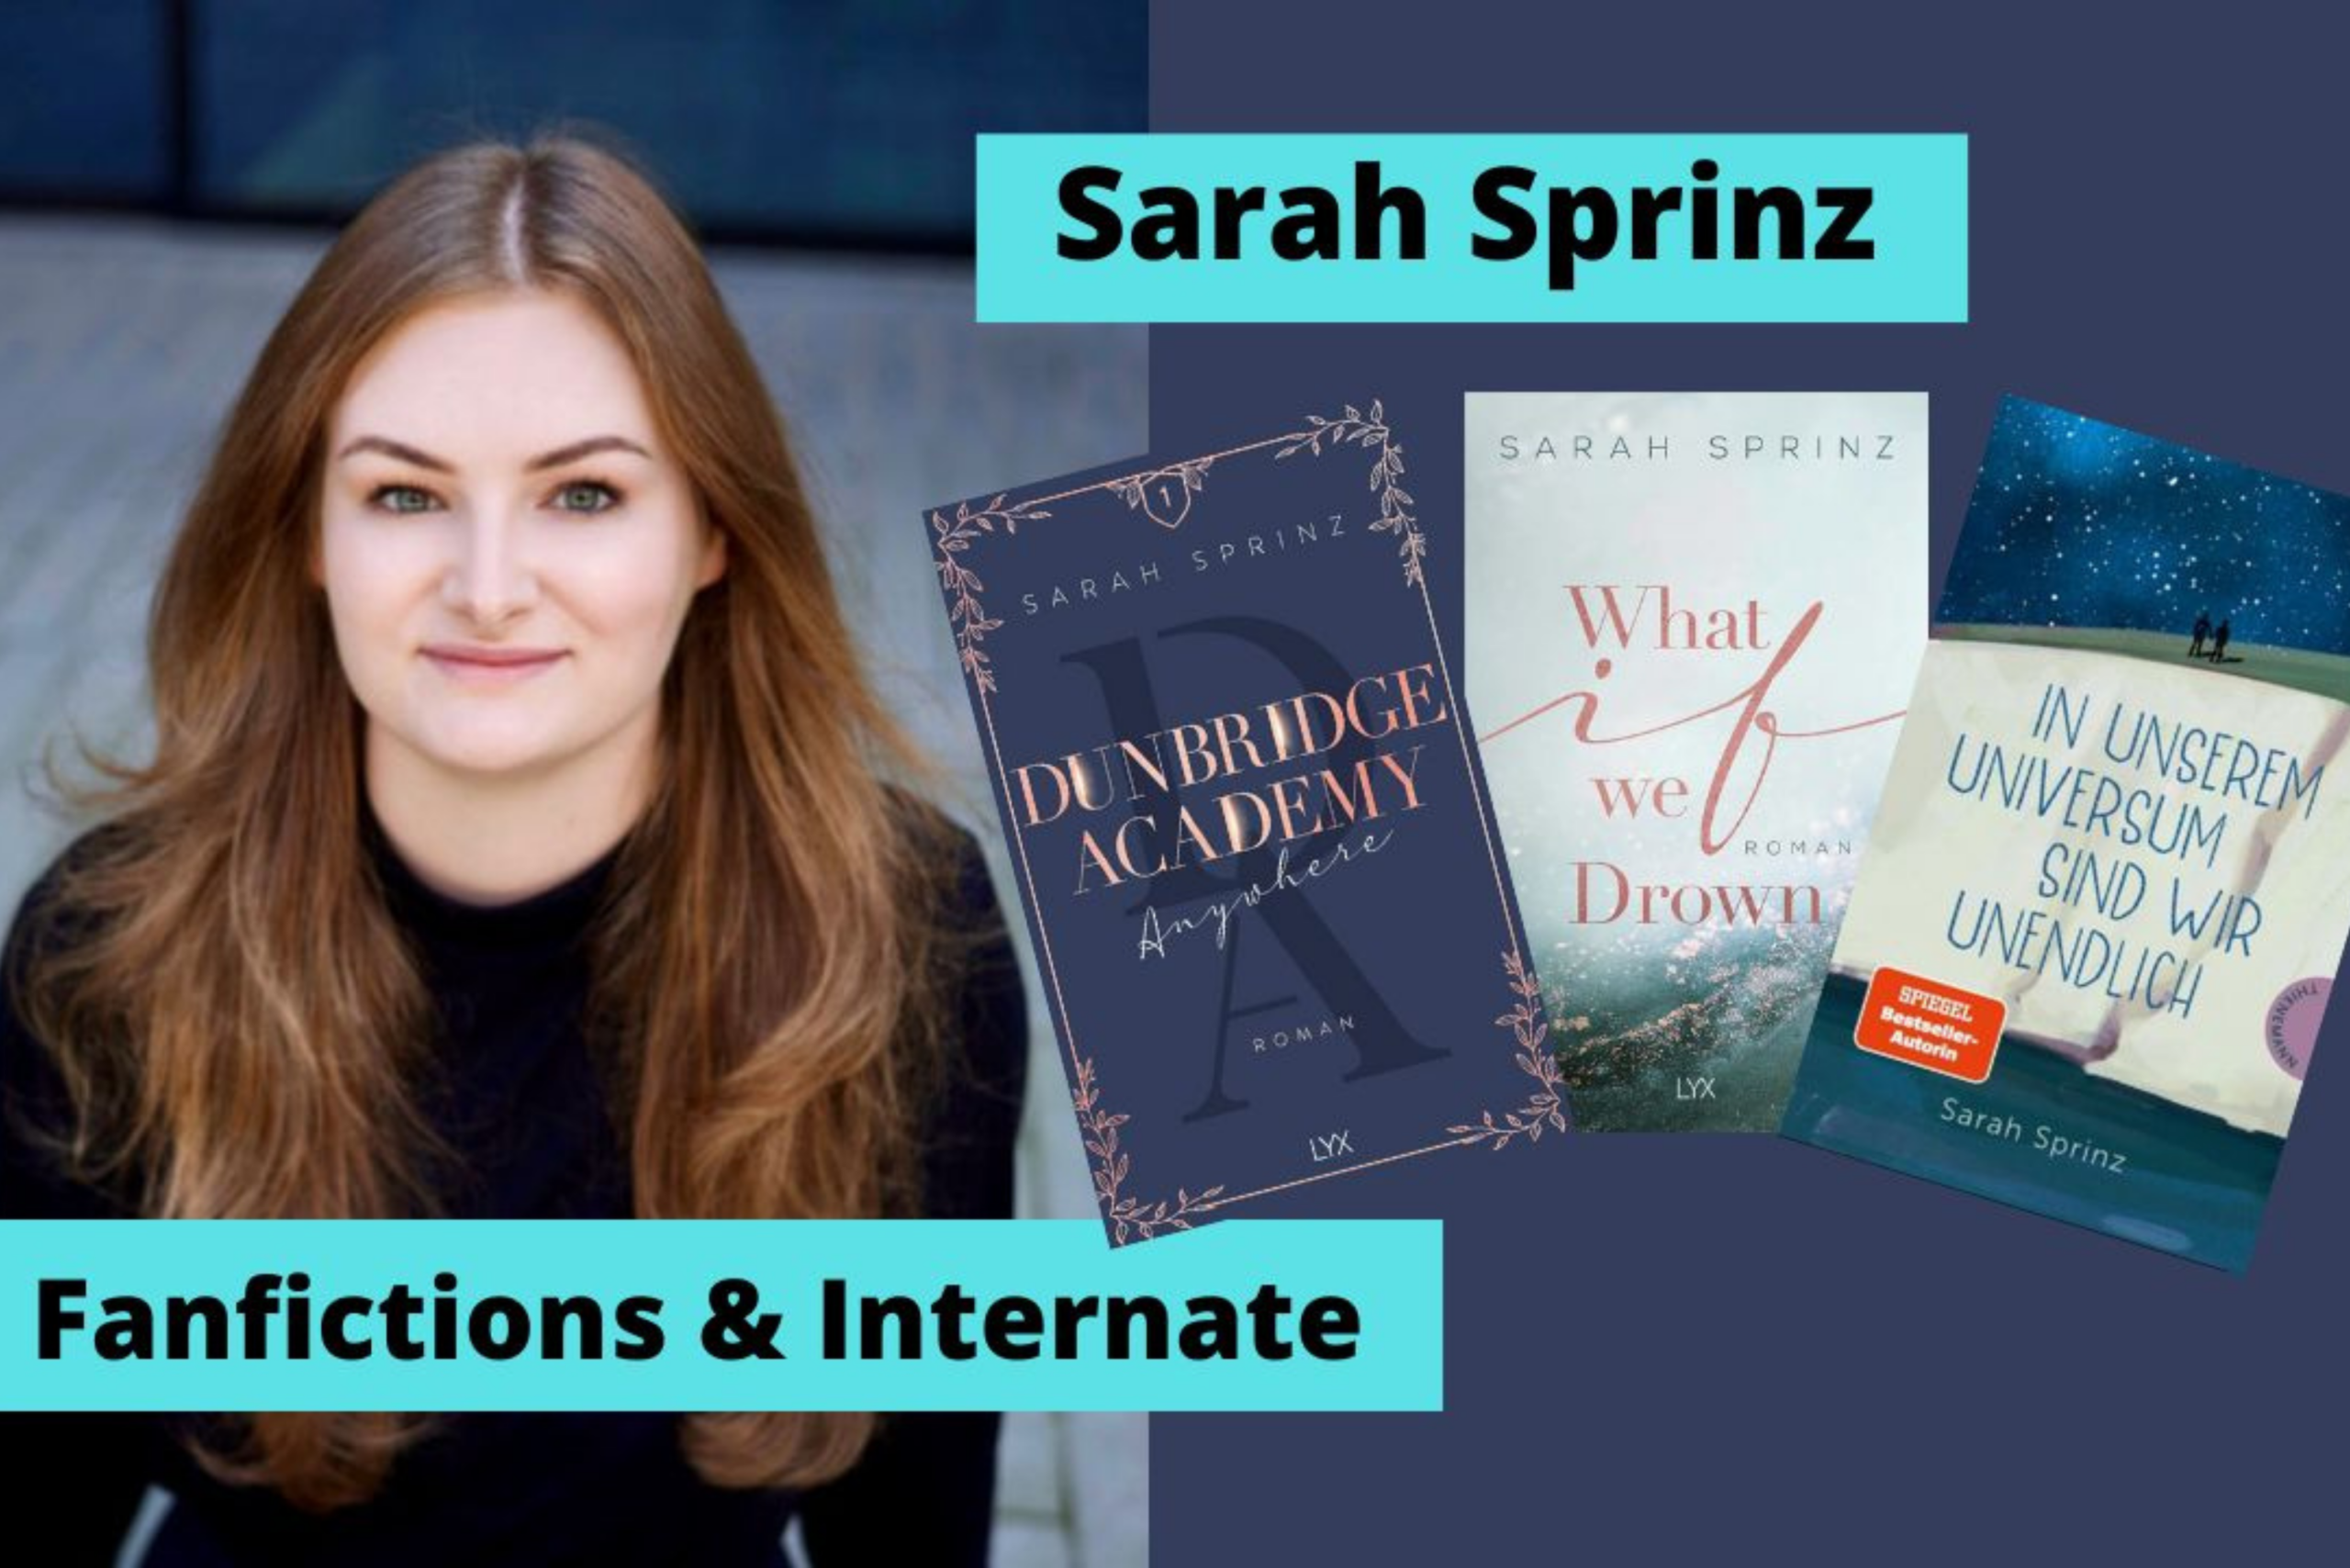 Sarah Sprinz Interview – Dunbridge Academy und Cro Fanfiction